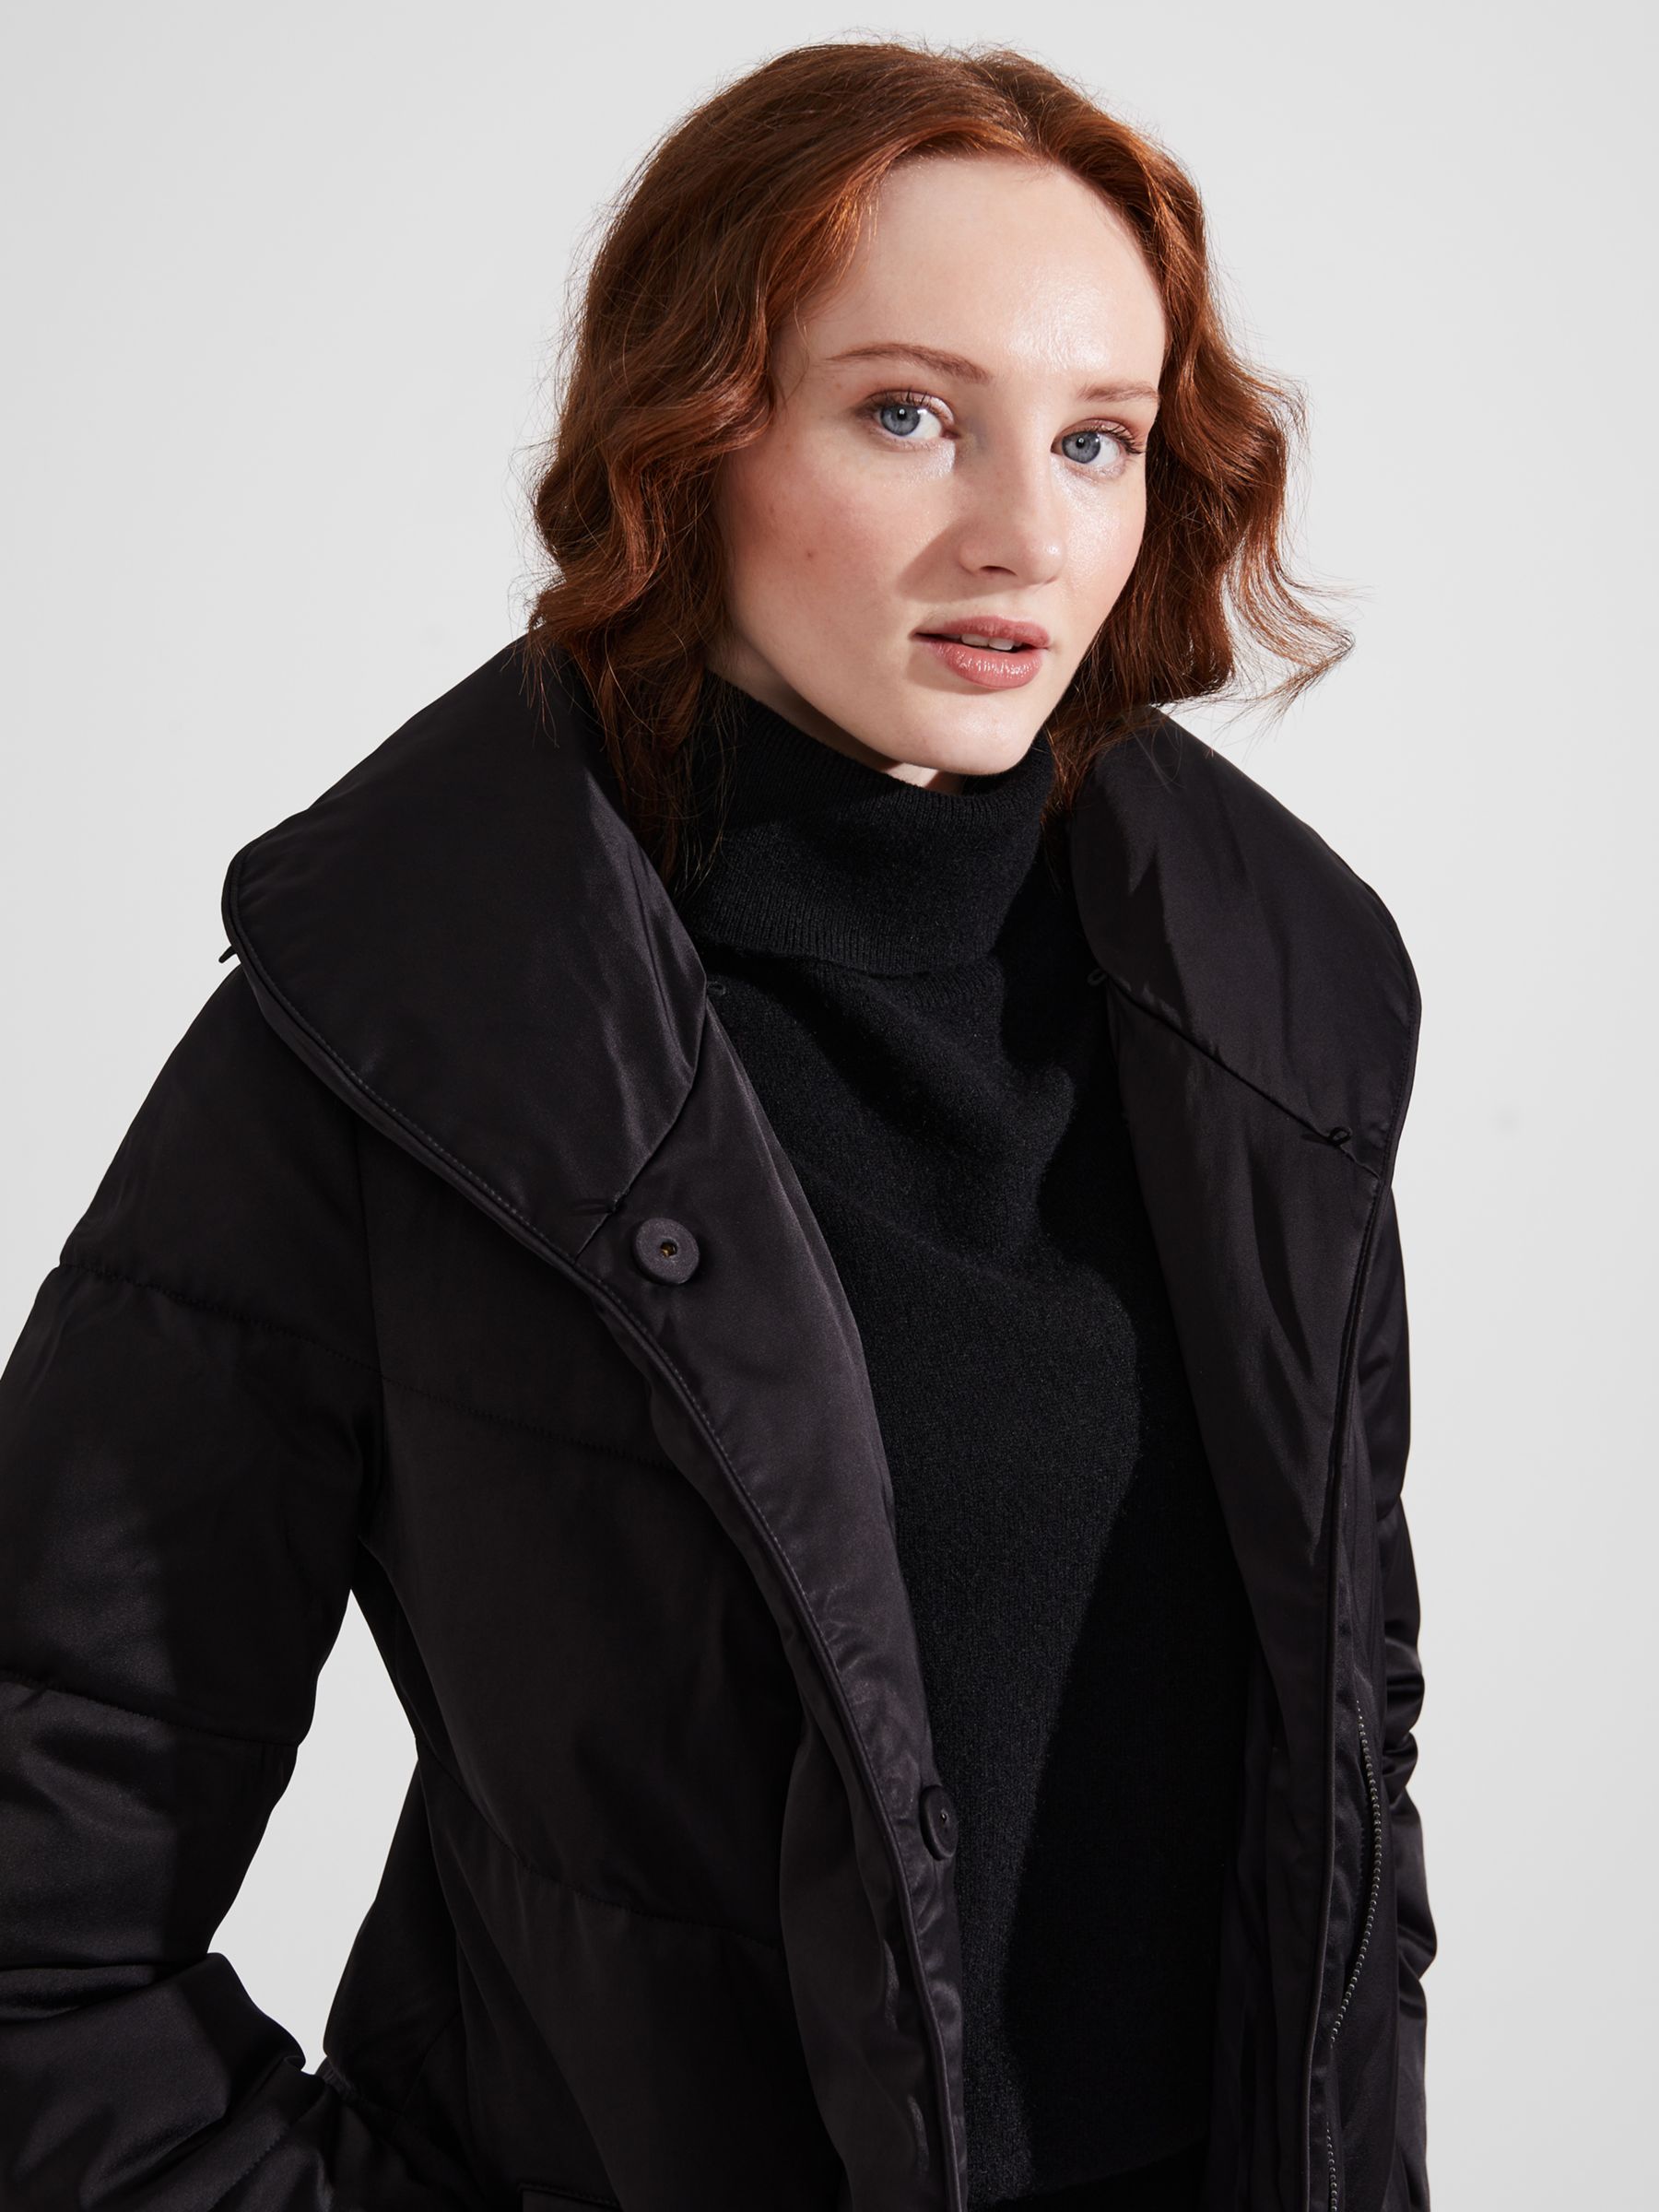 Women's Coats & Jackets, Wool, Puffers, Long & Belted Styles, Hobbs London